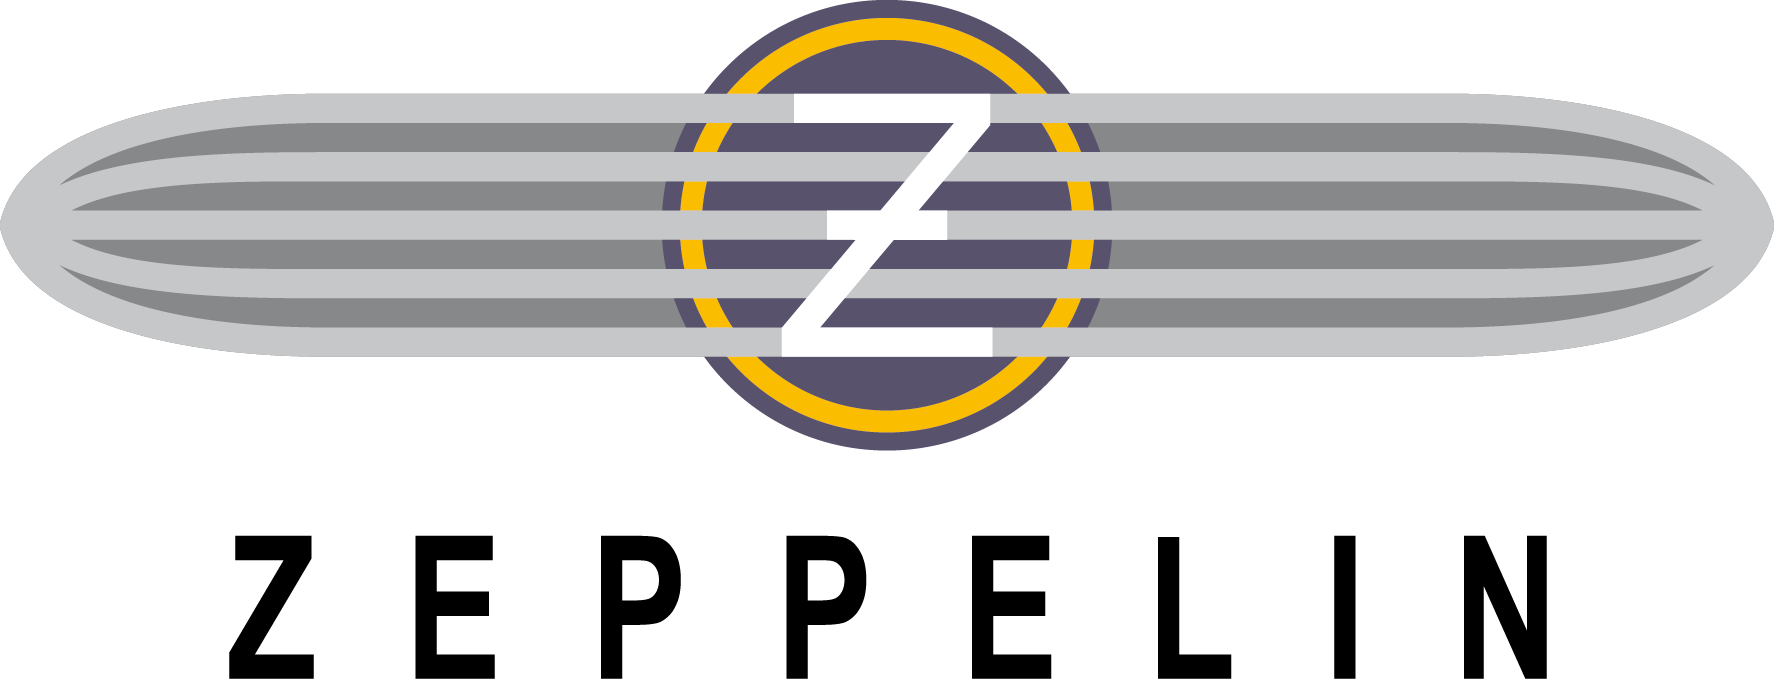 Zeppelin logo.png